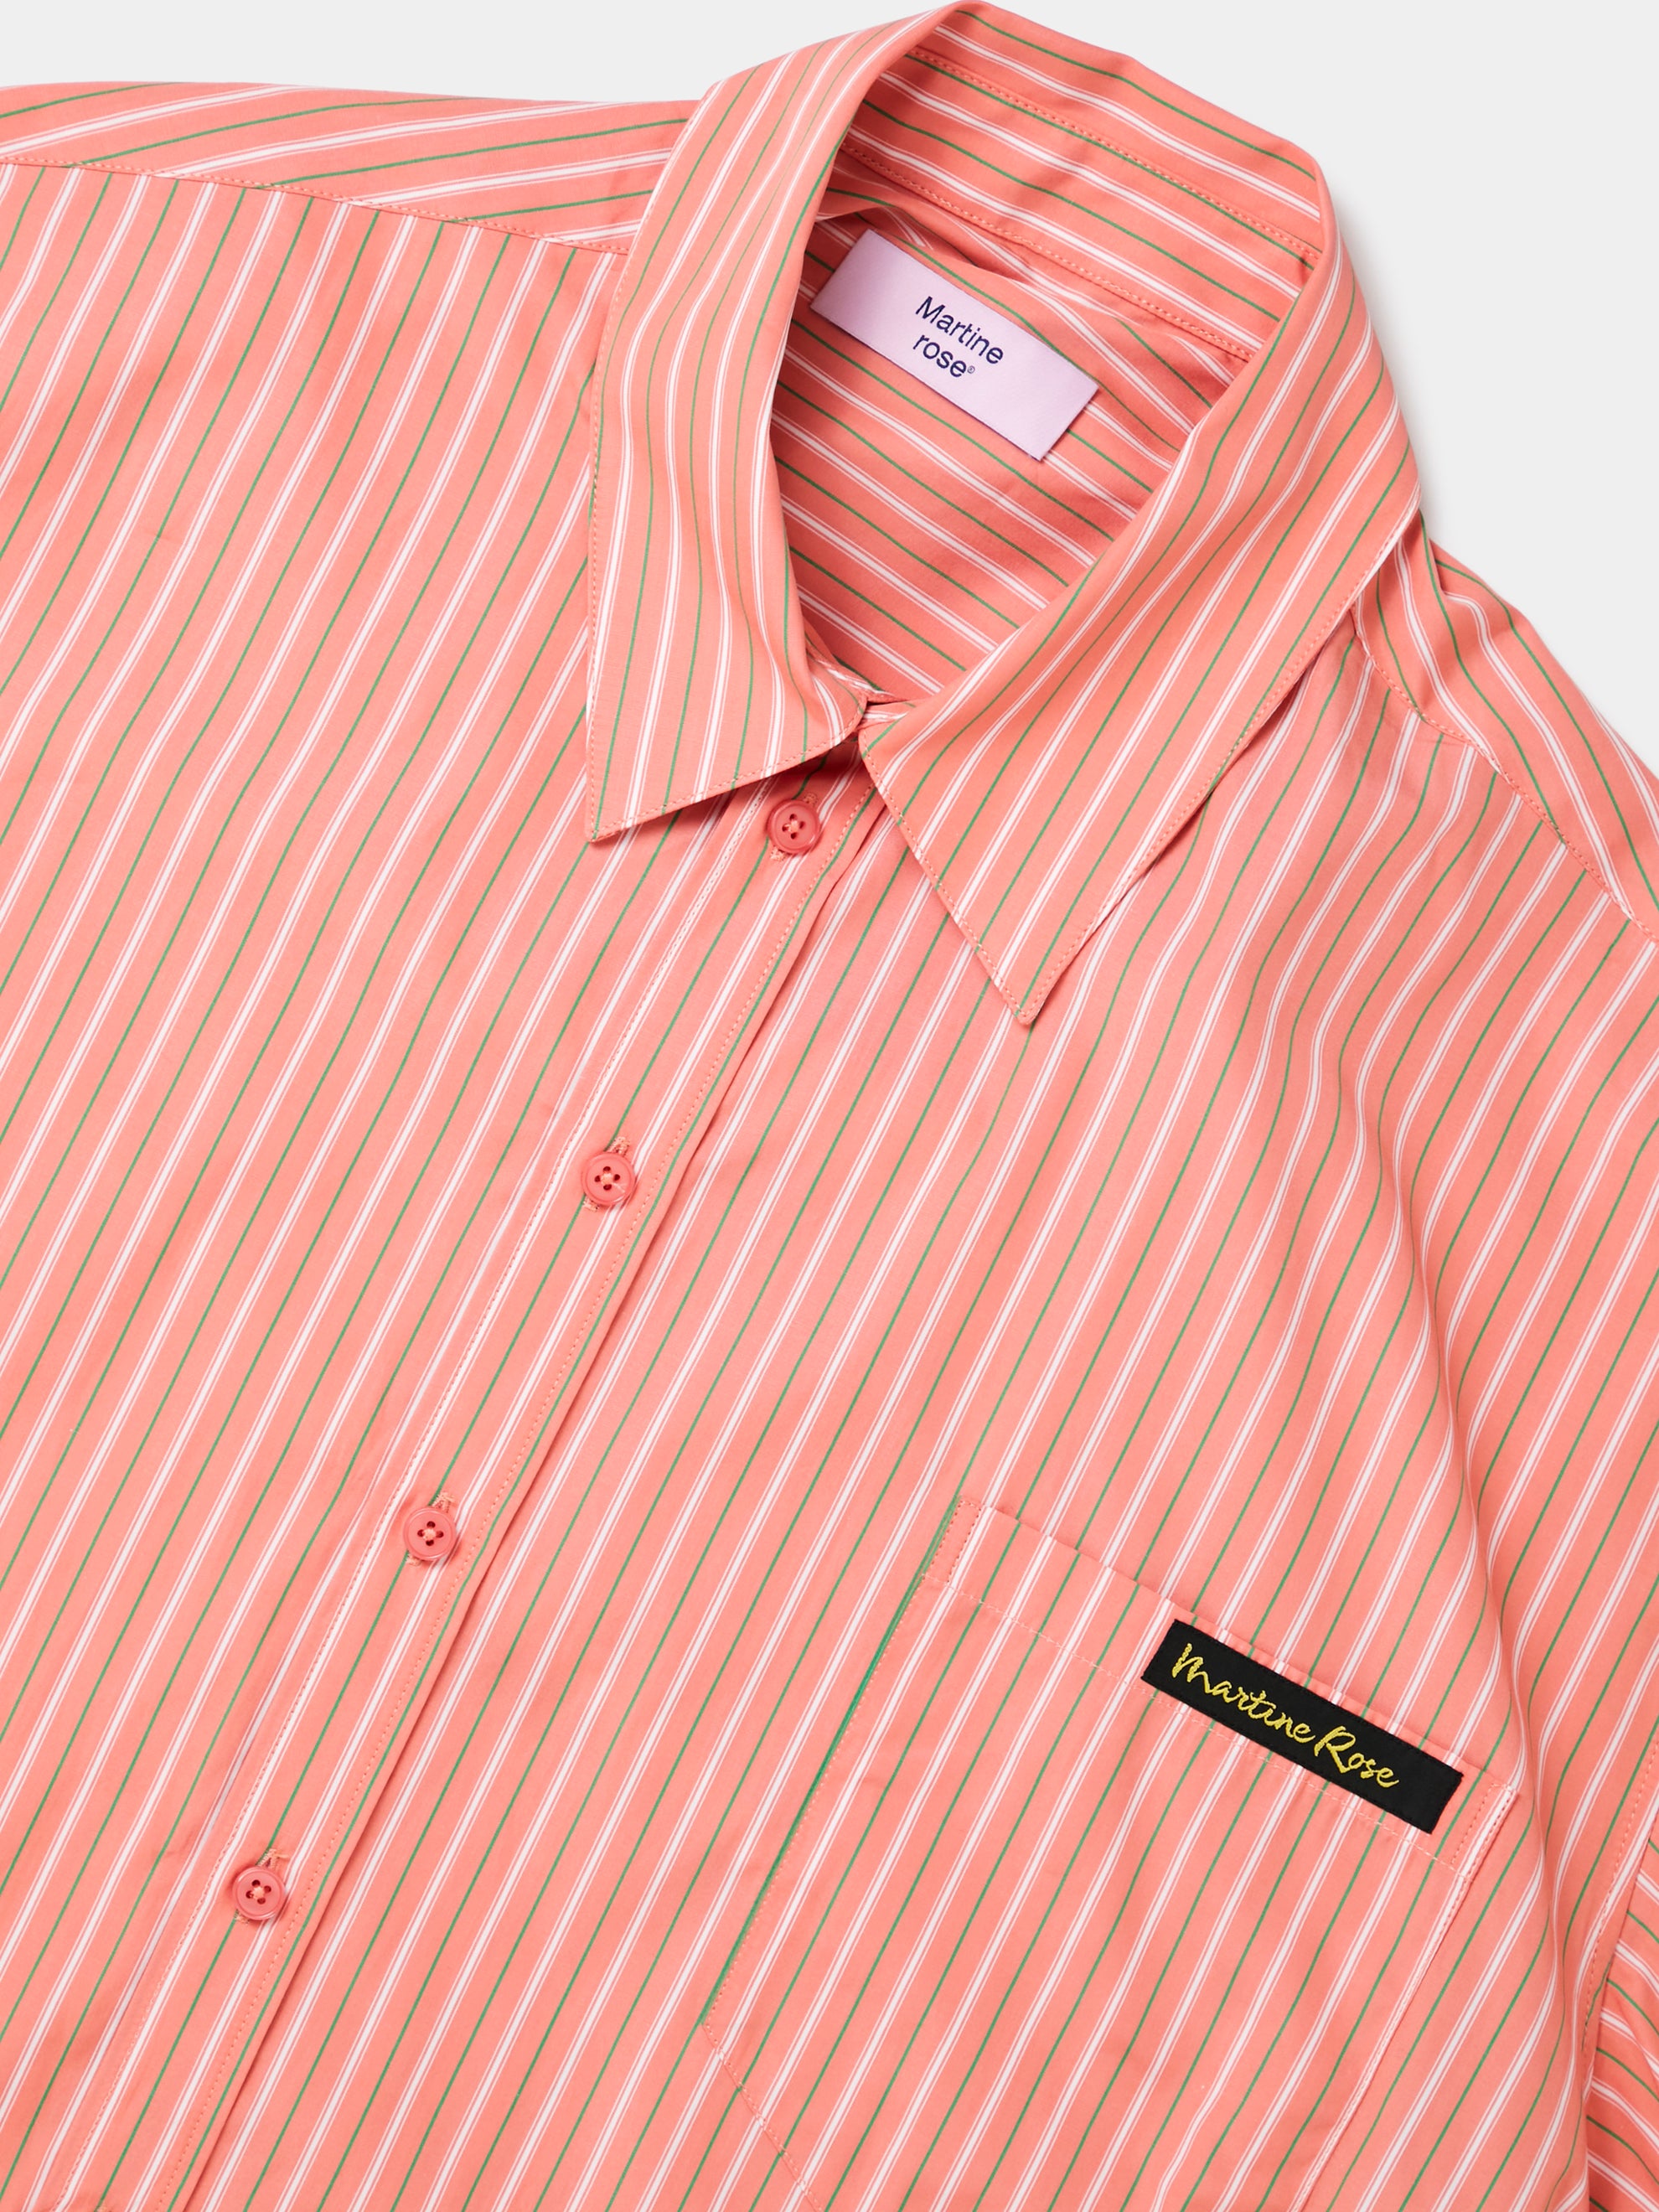 S/S Wrap Shirt (Pink)